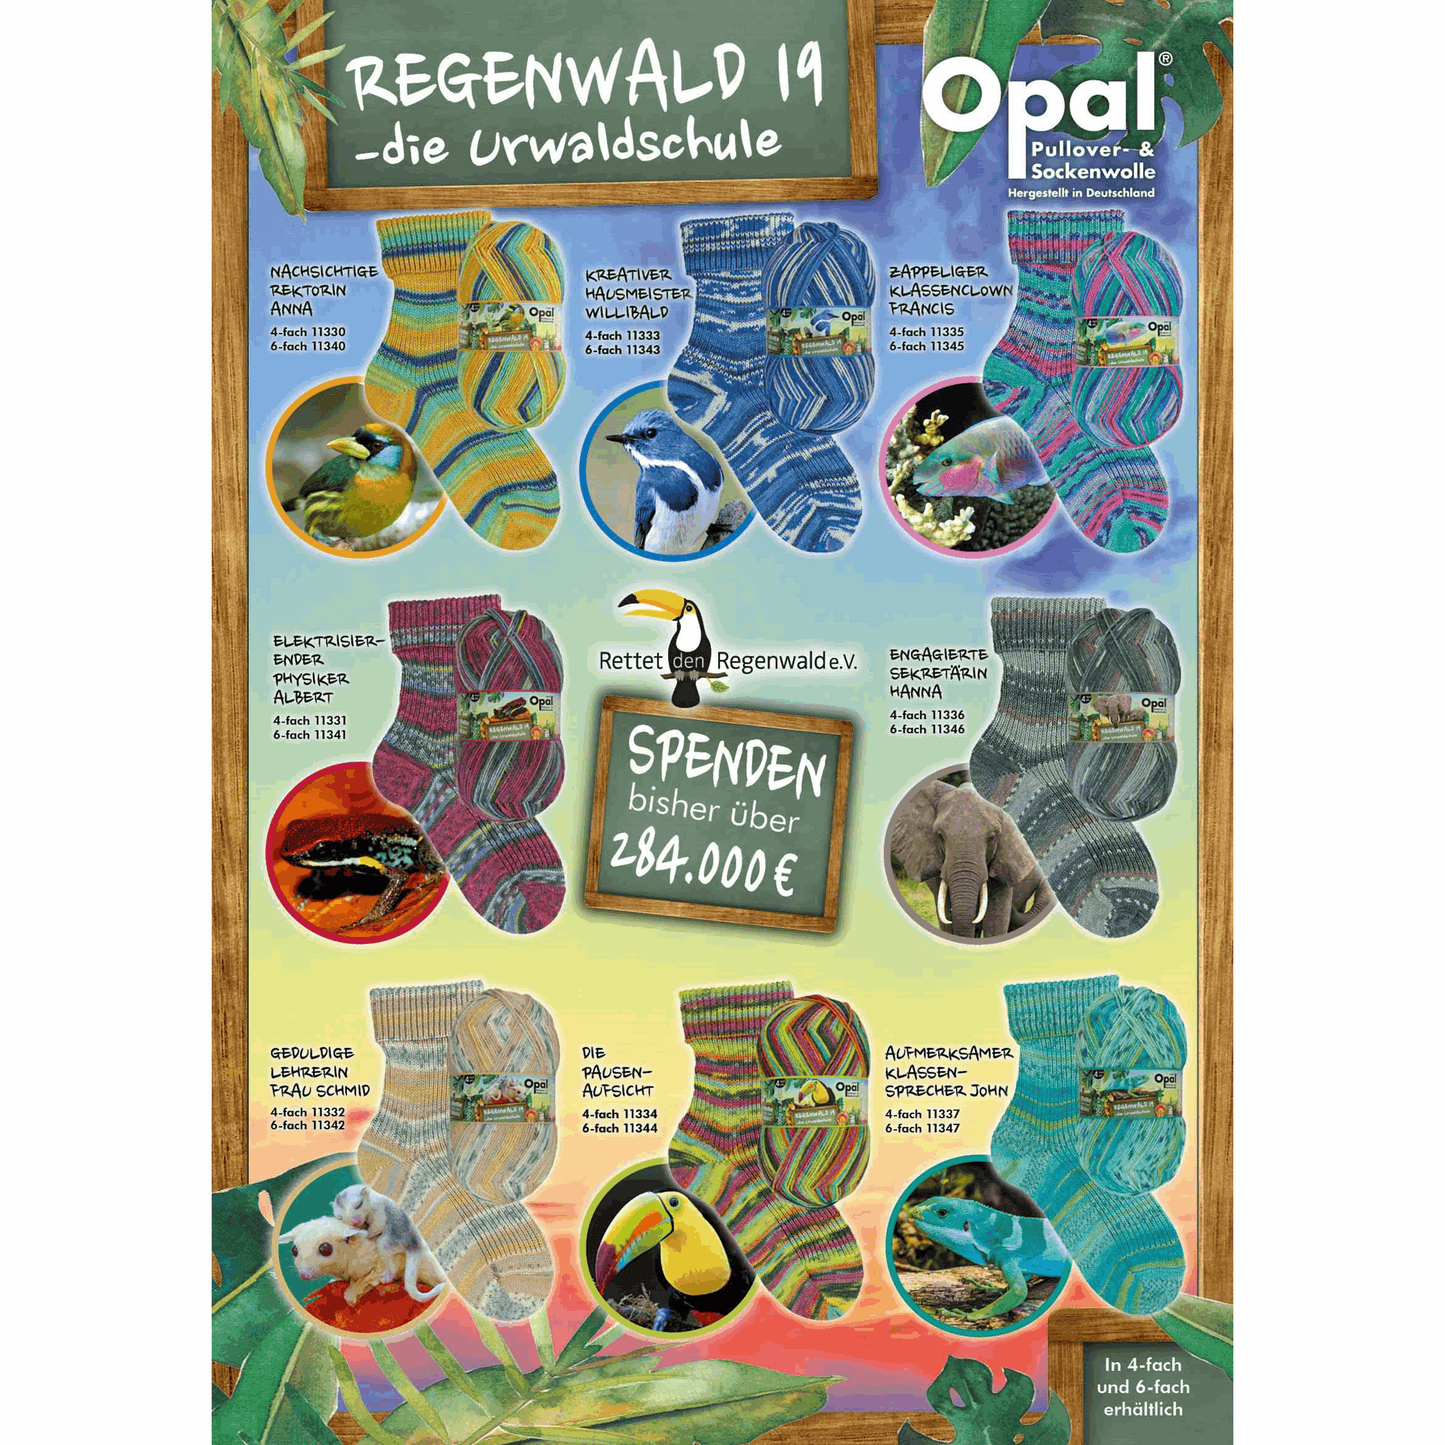 Opal Regenwald 19 4fädig 100g, 97754, Farbe zappeliger Klassenclown Francis 1335